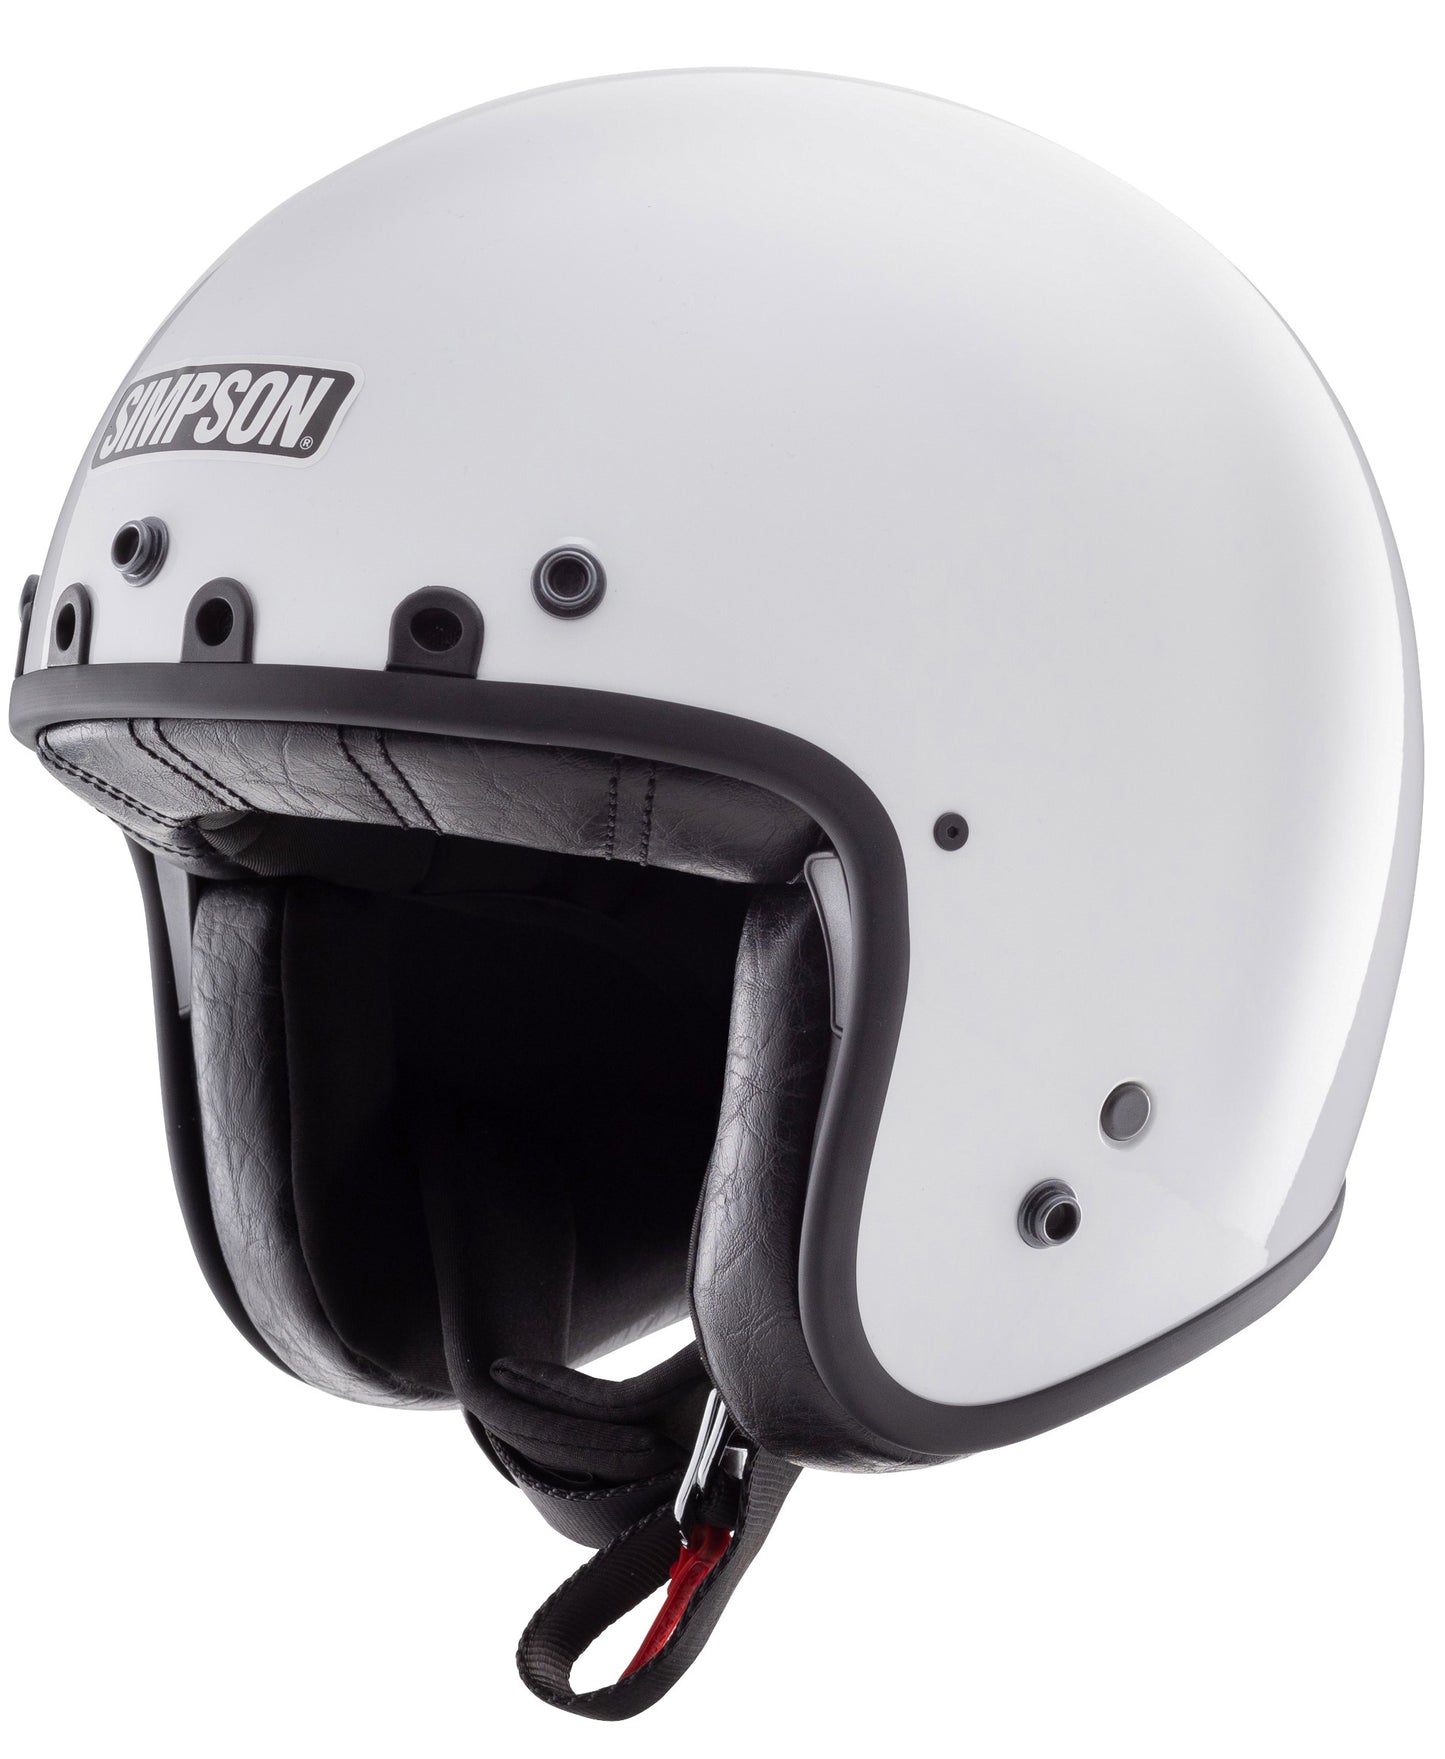 Simpson Chopper Helmet - White